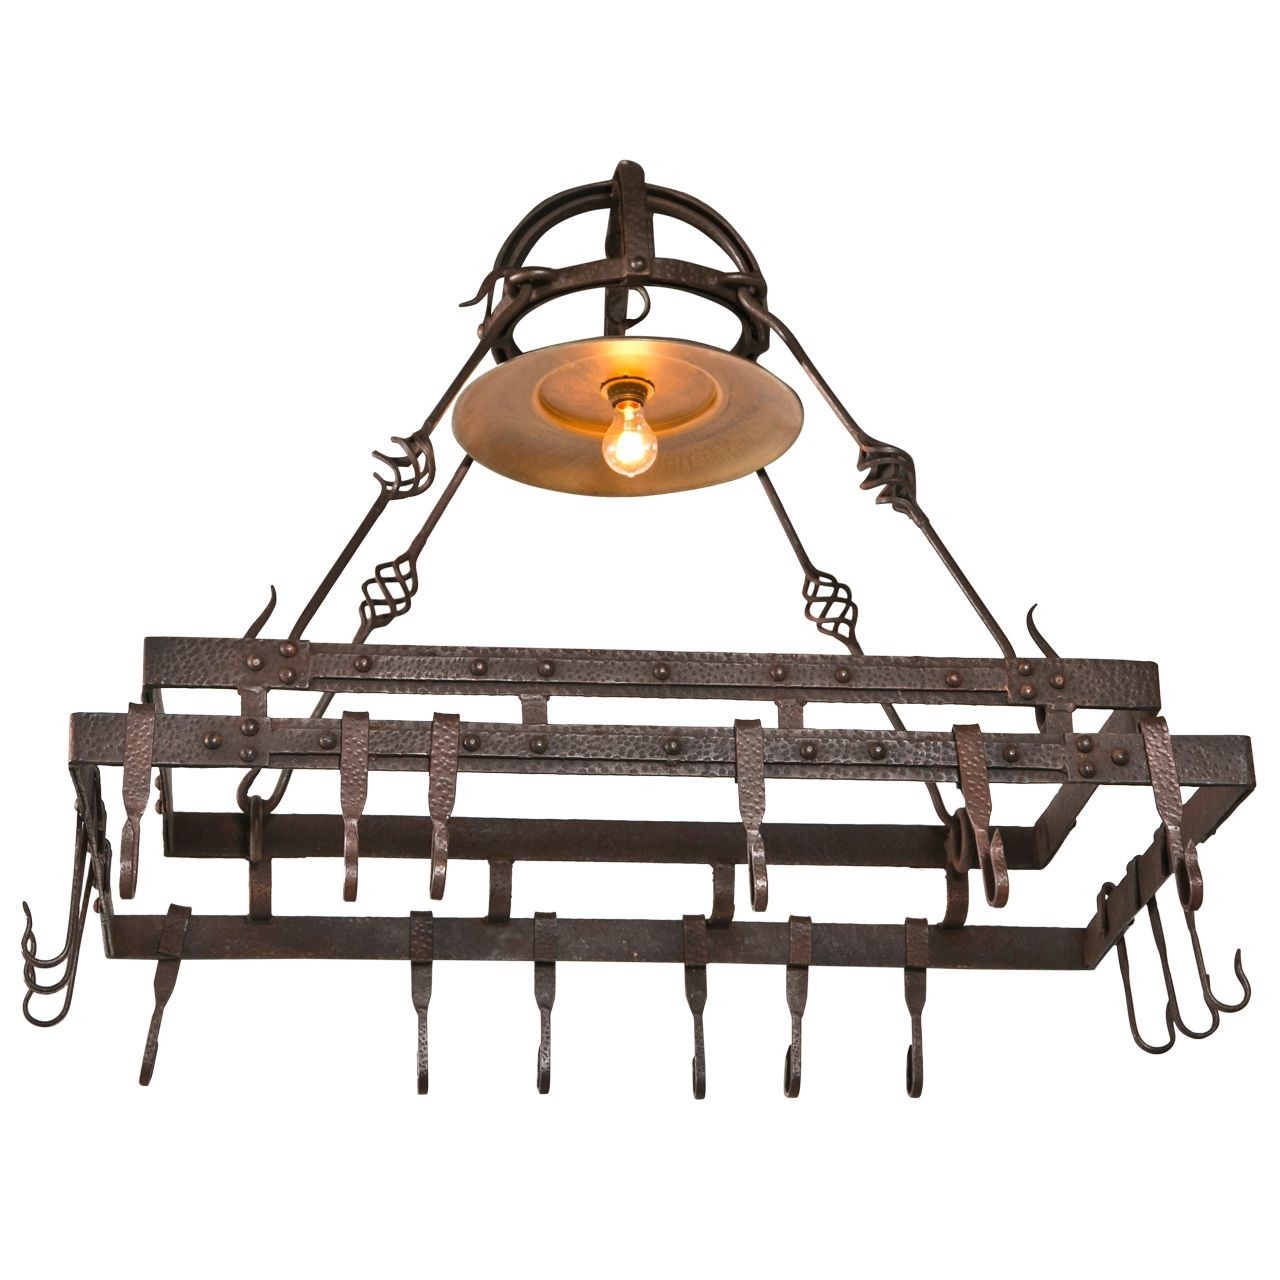 Wrought iron pot hanging pot rack center light